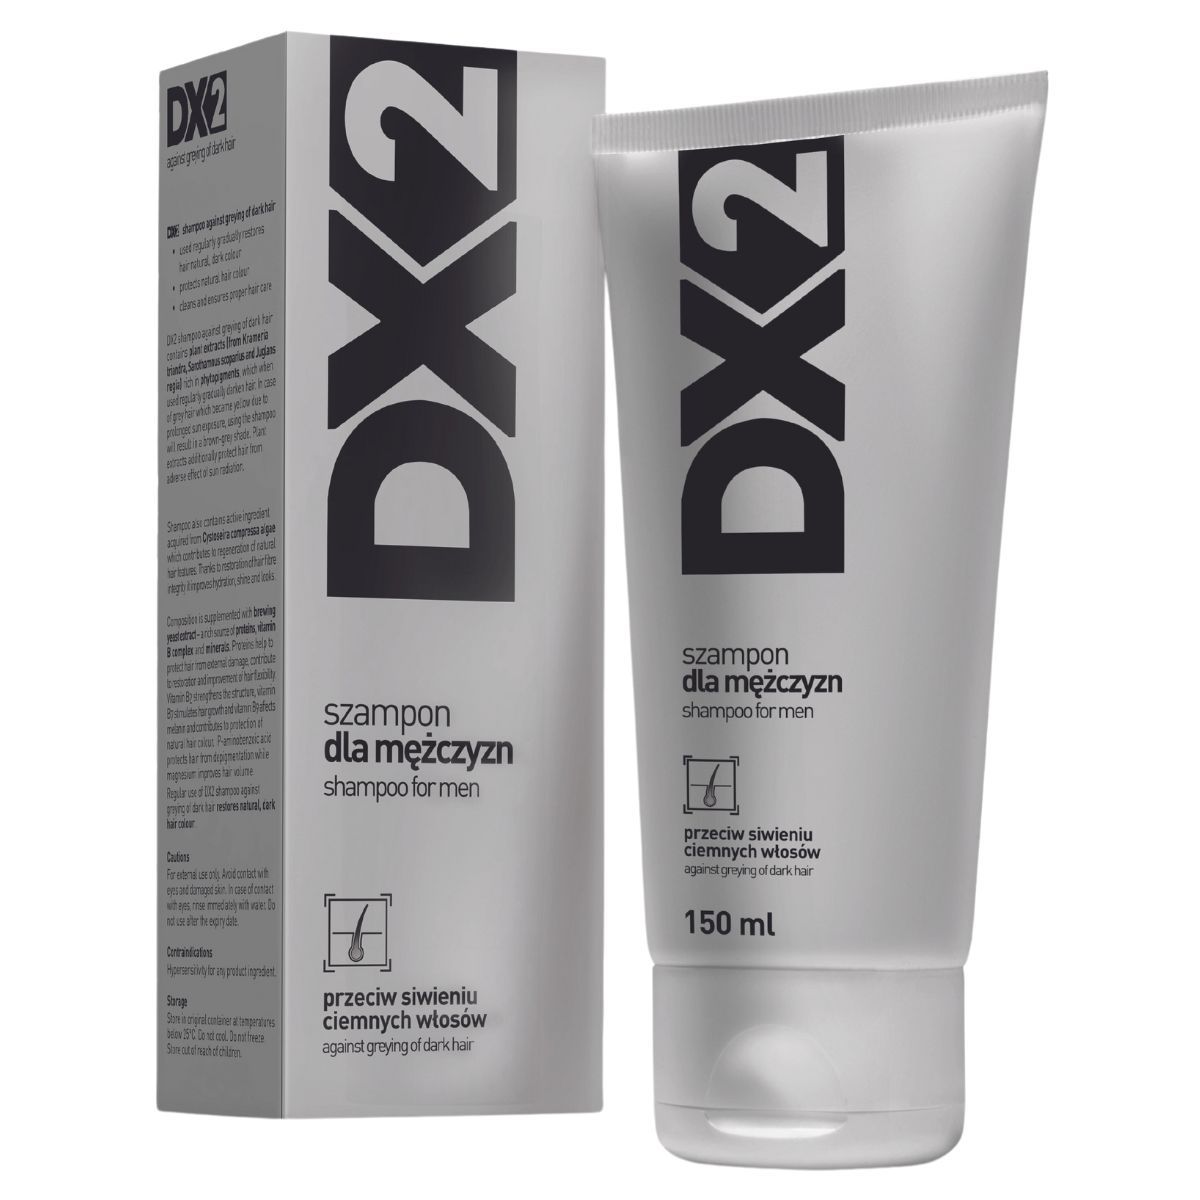 szampon dx2 wizaz